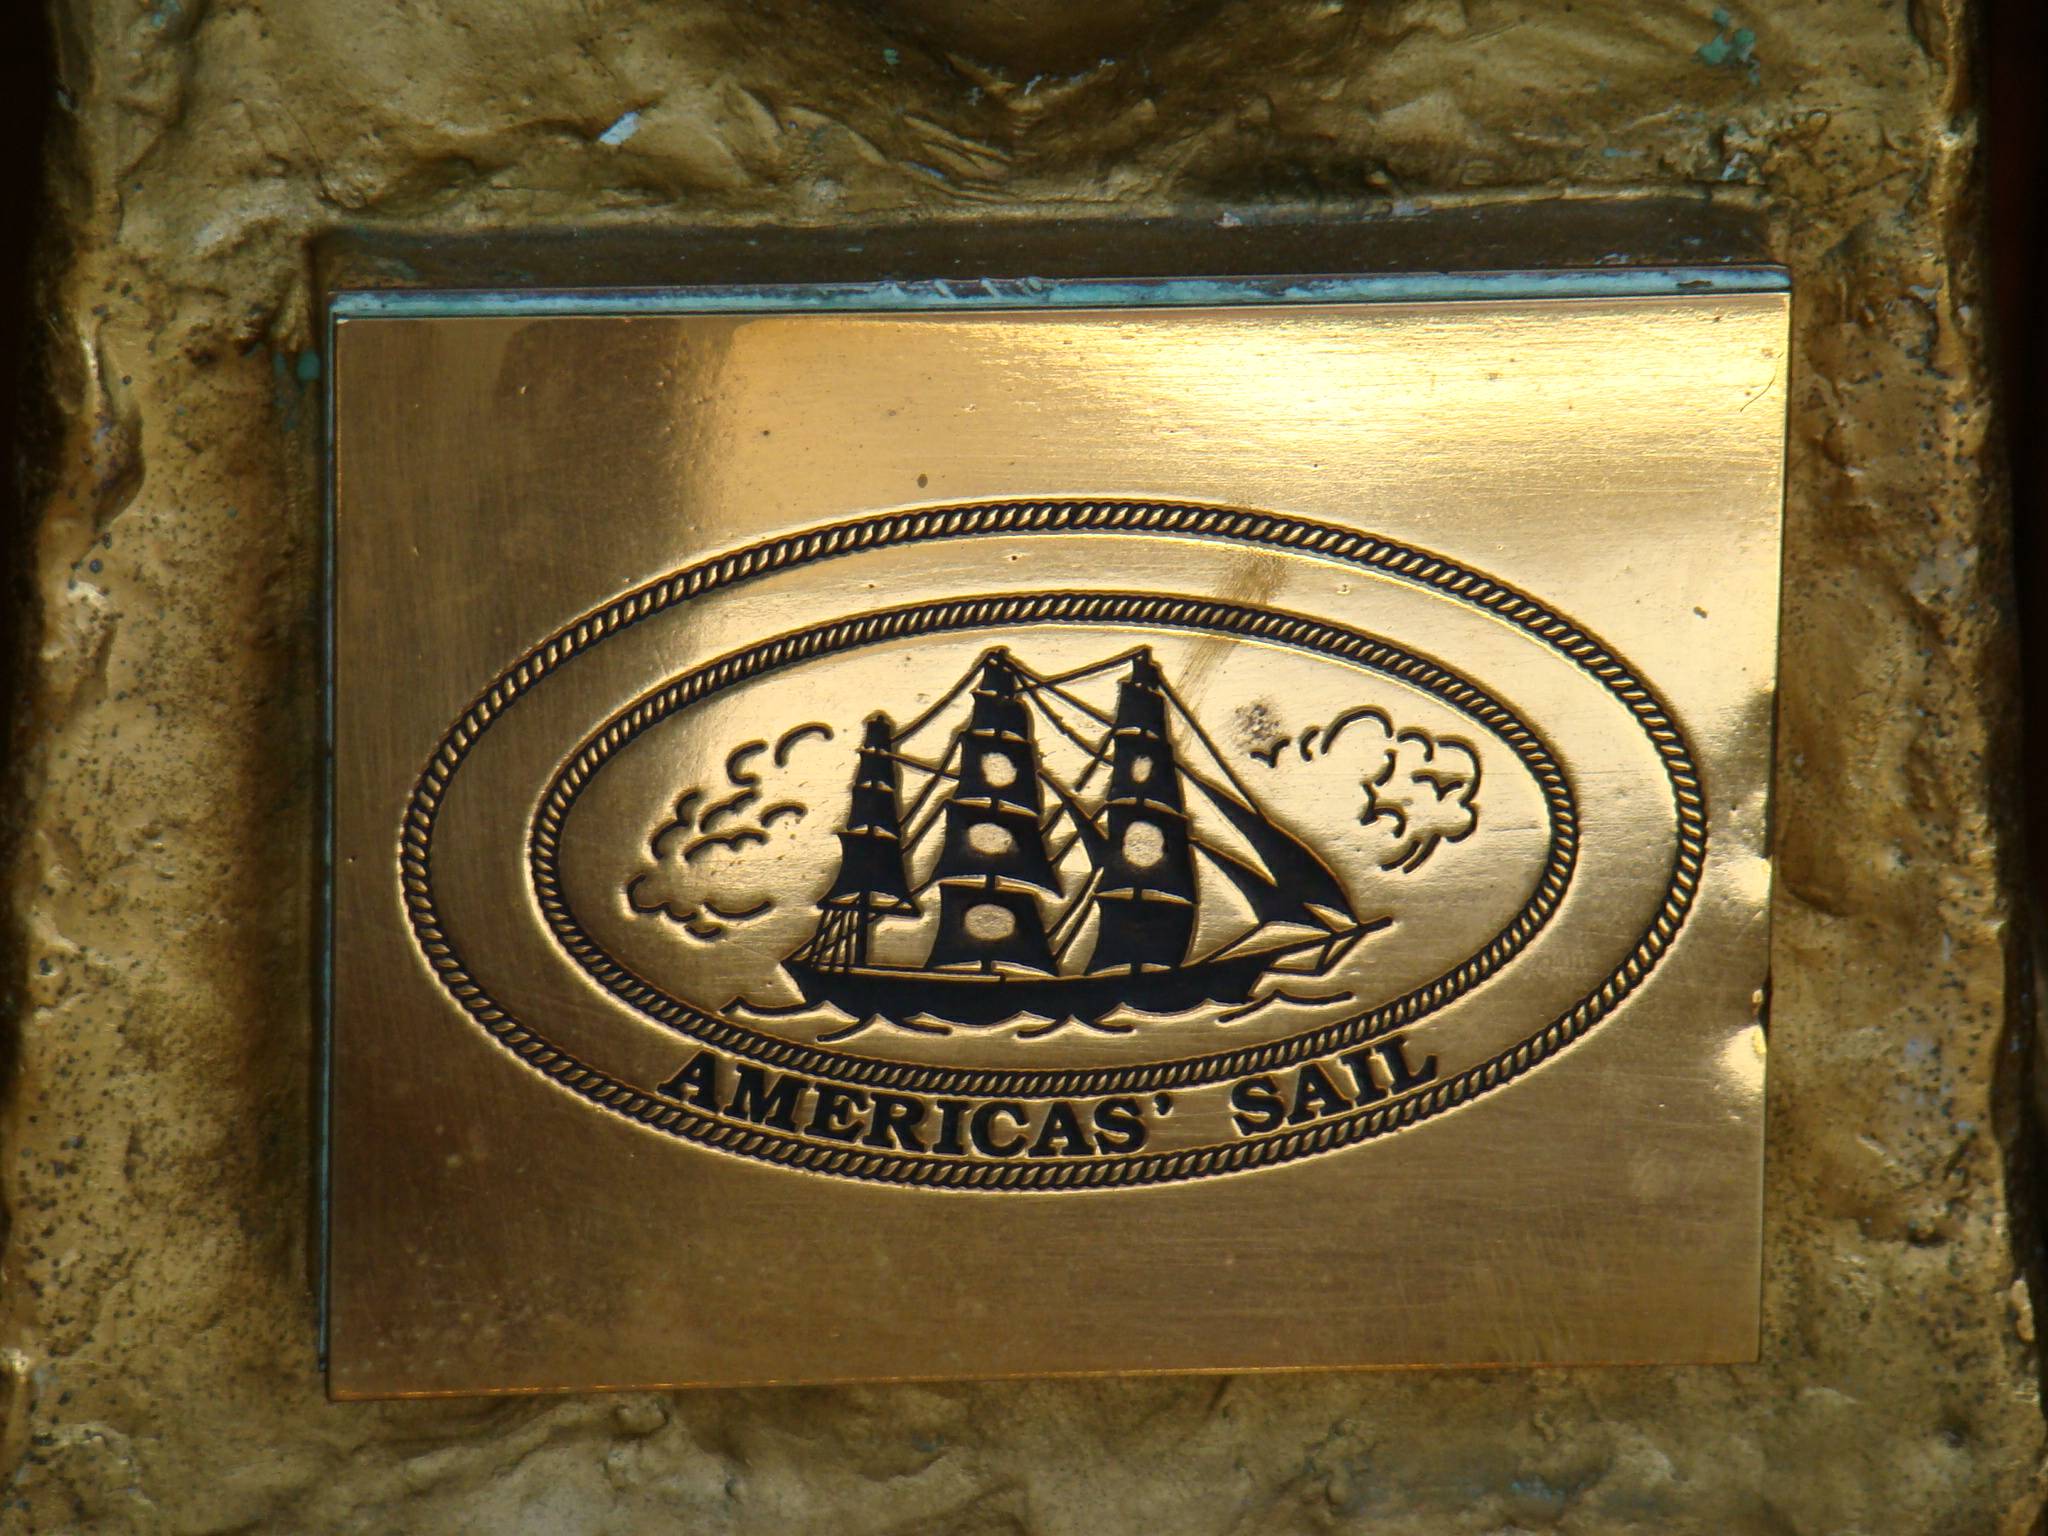 Detalhes do Troféu da Americas Sails. (foto: Rogério Cordeiro - 11/01/2010)